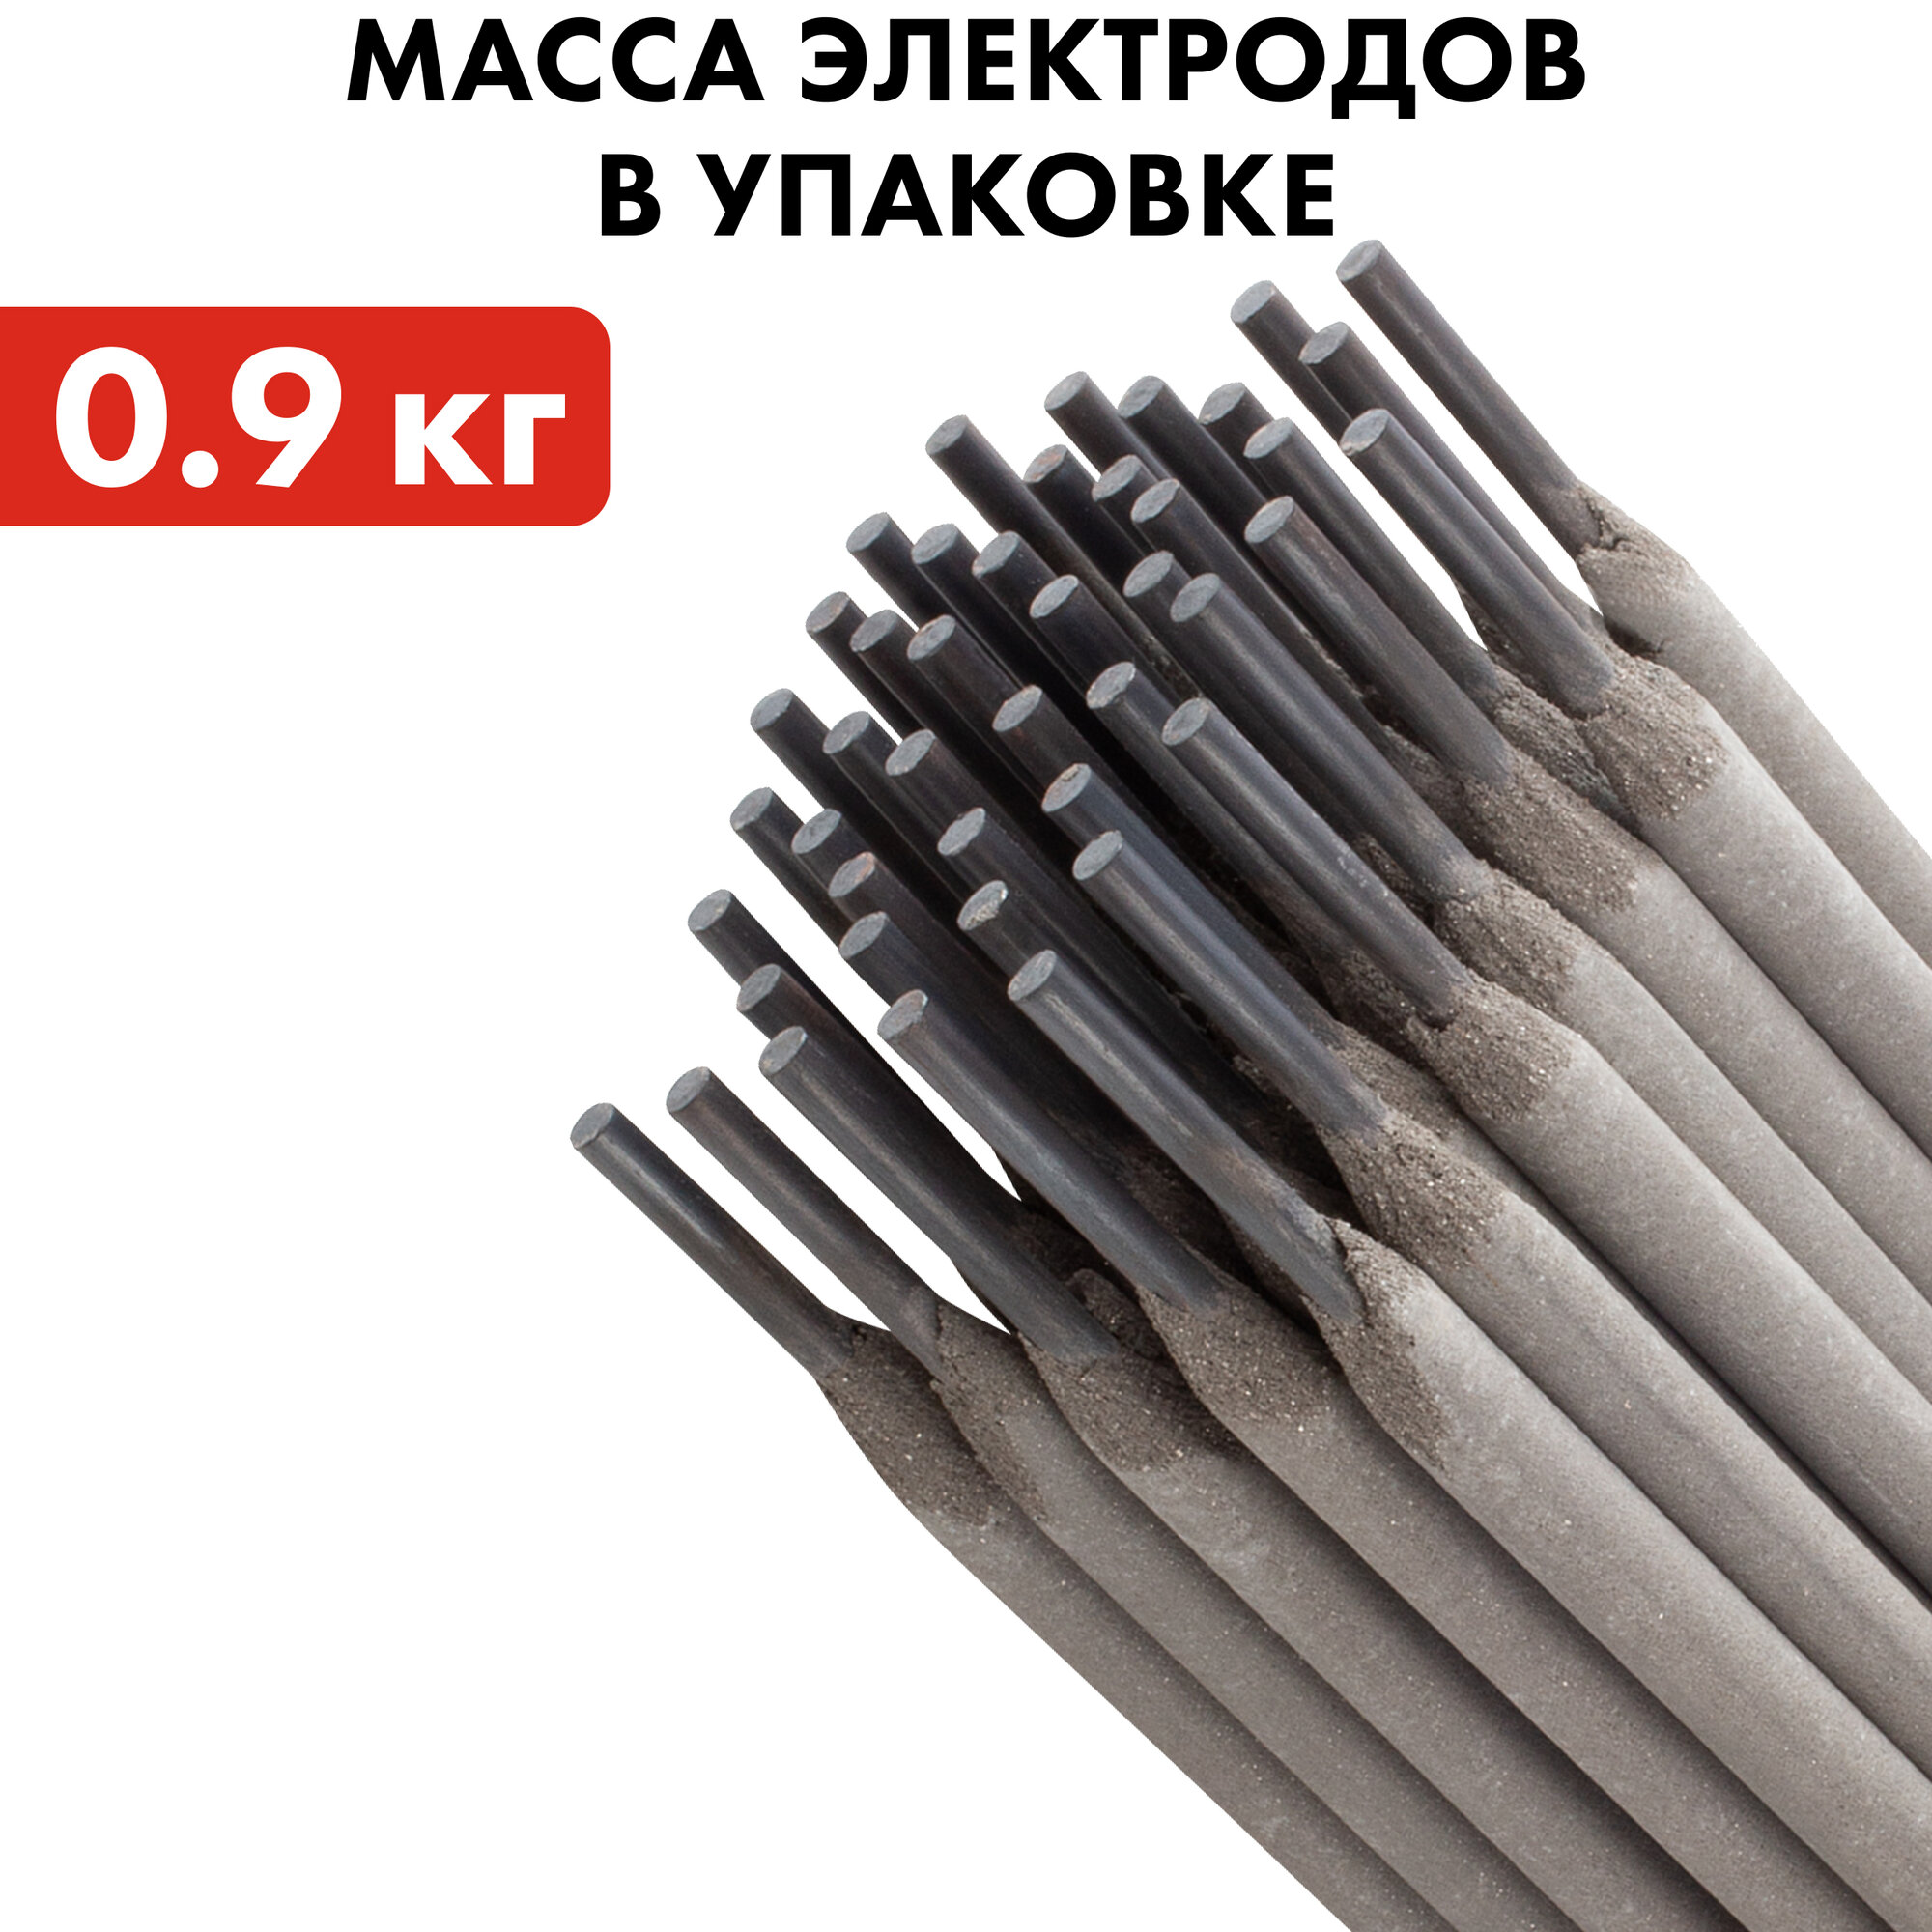 Электроды сварочные QUATTRO ELEMENTI рутиловые, 4,0 мм, масса 0,9 кг (772-159)